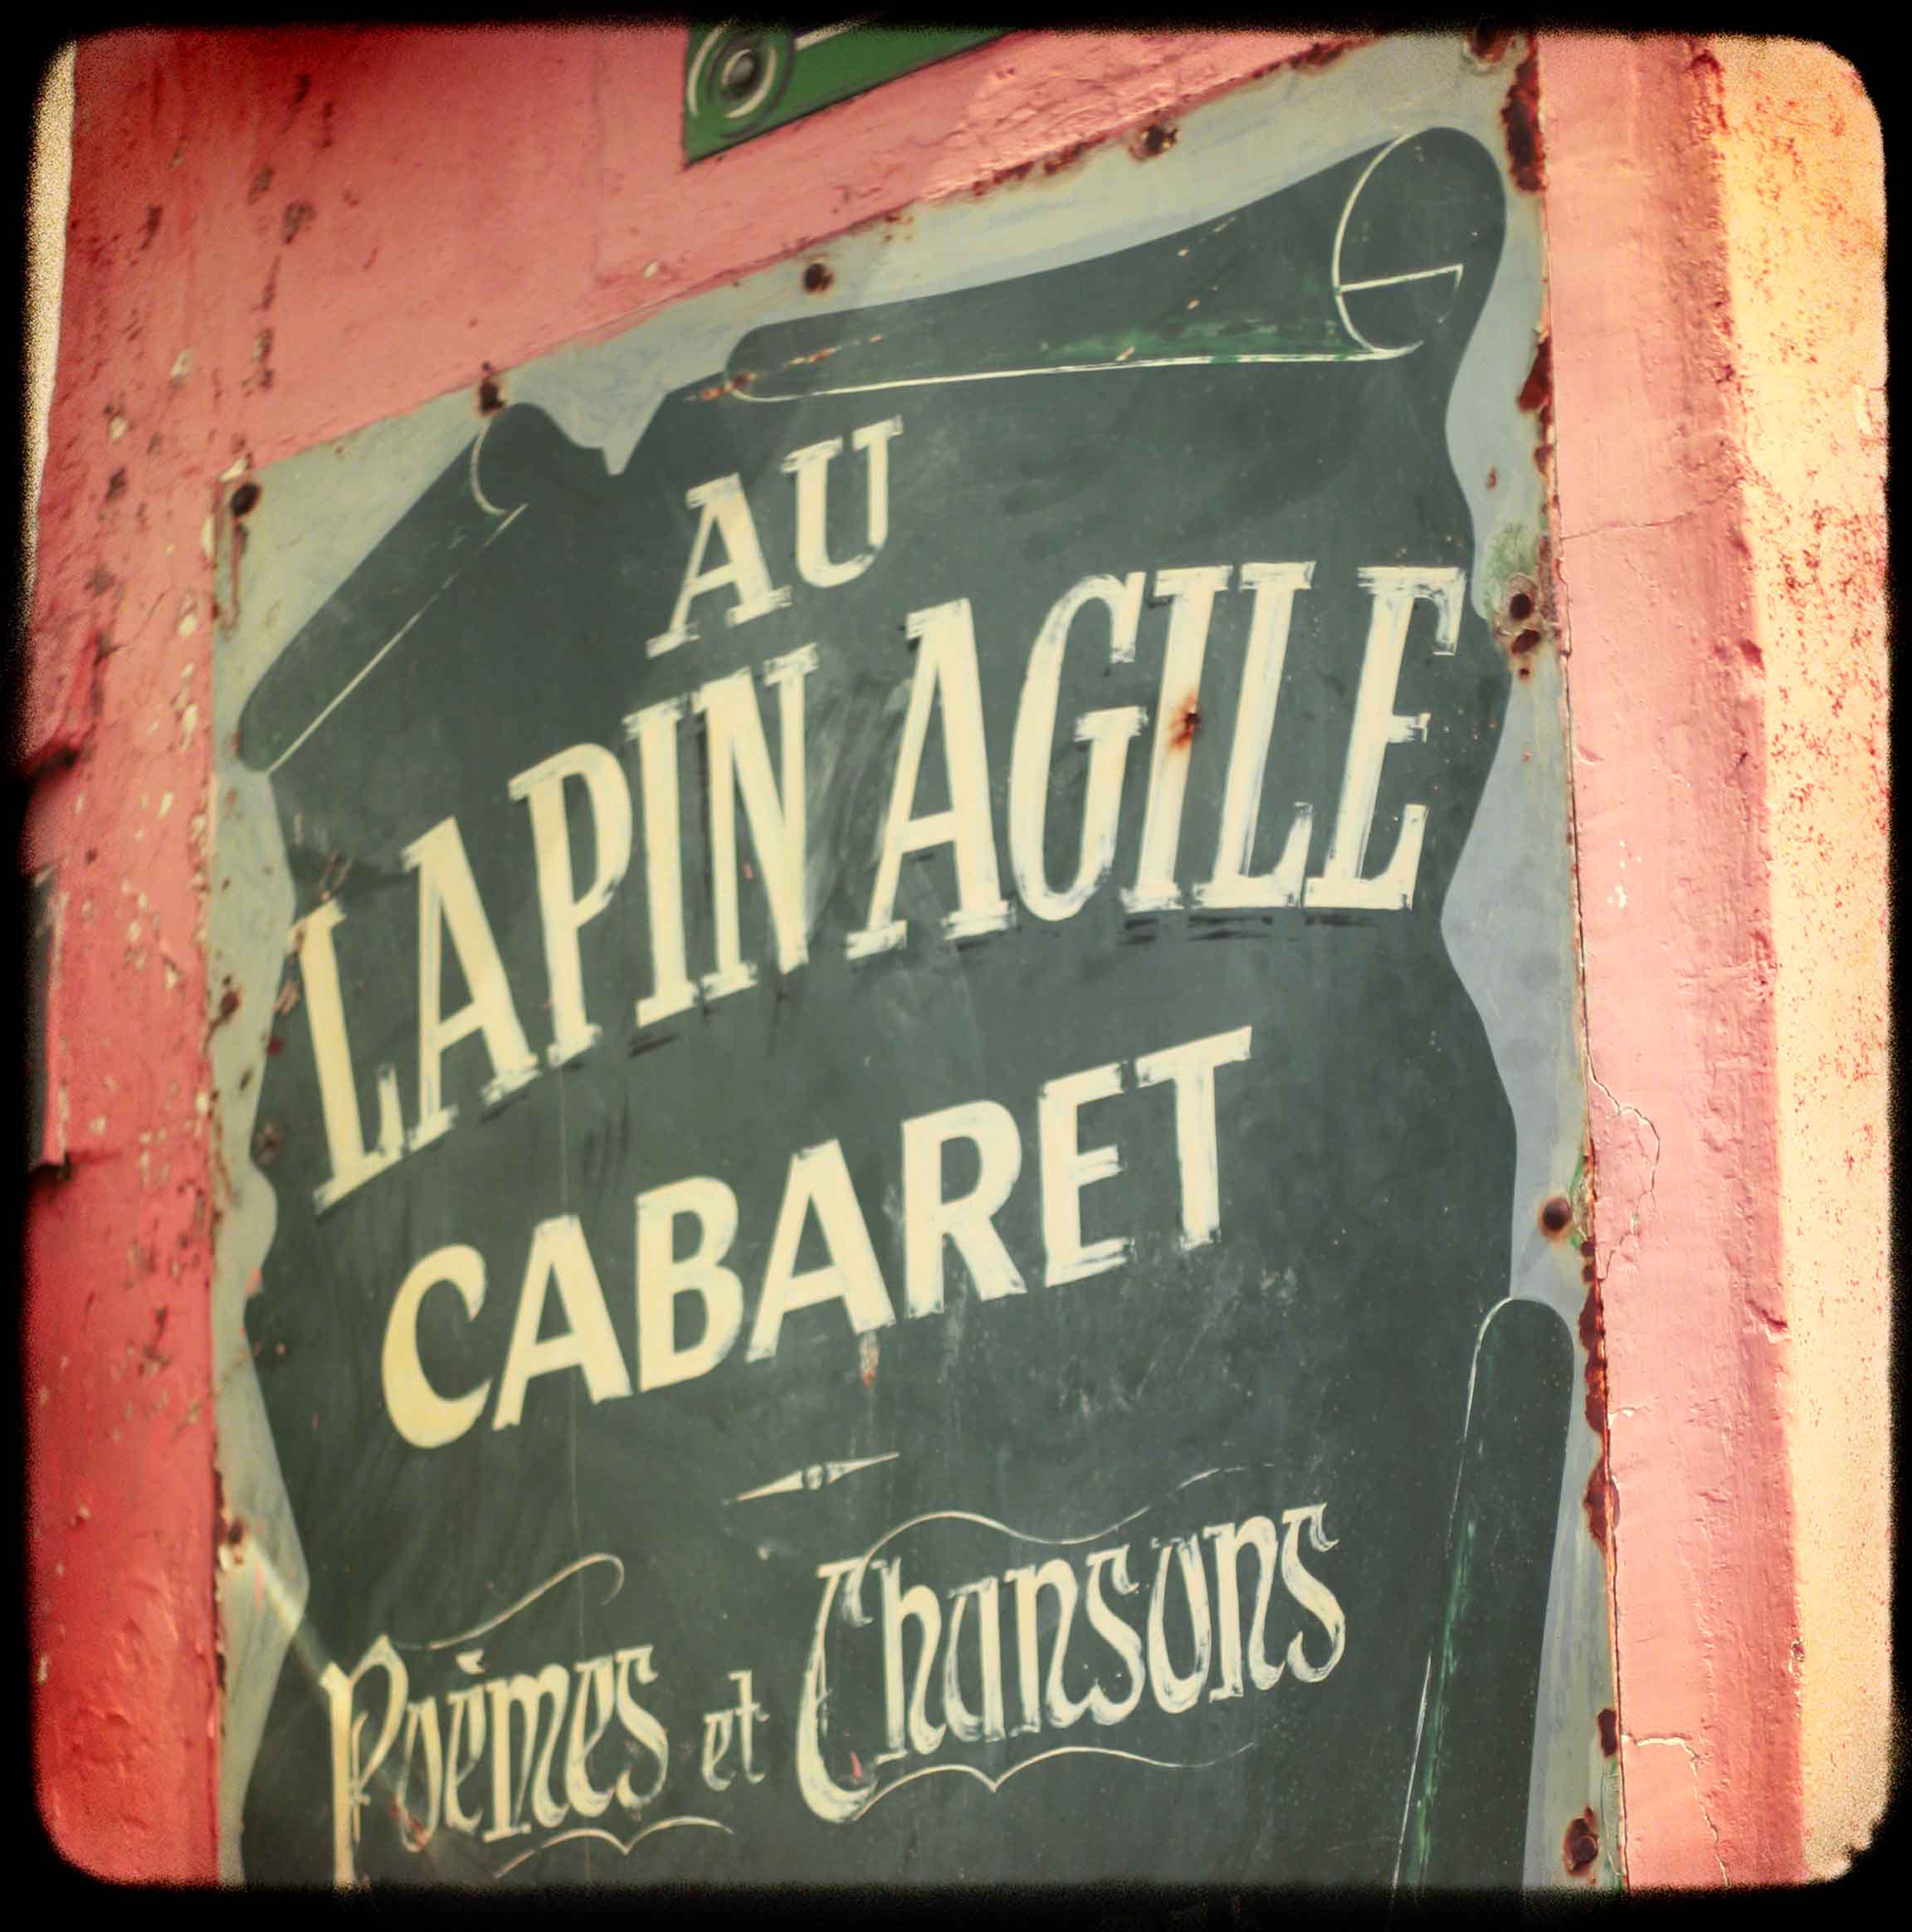 Le Lapin Agile, historic cabaret in Paris